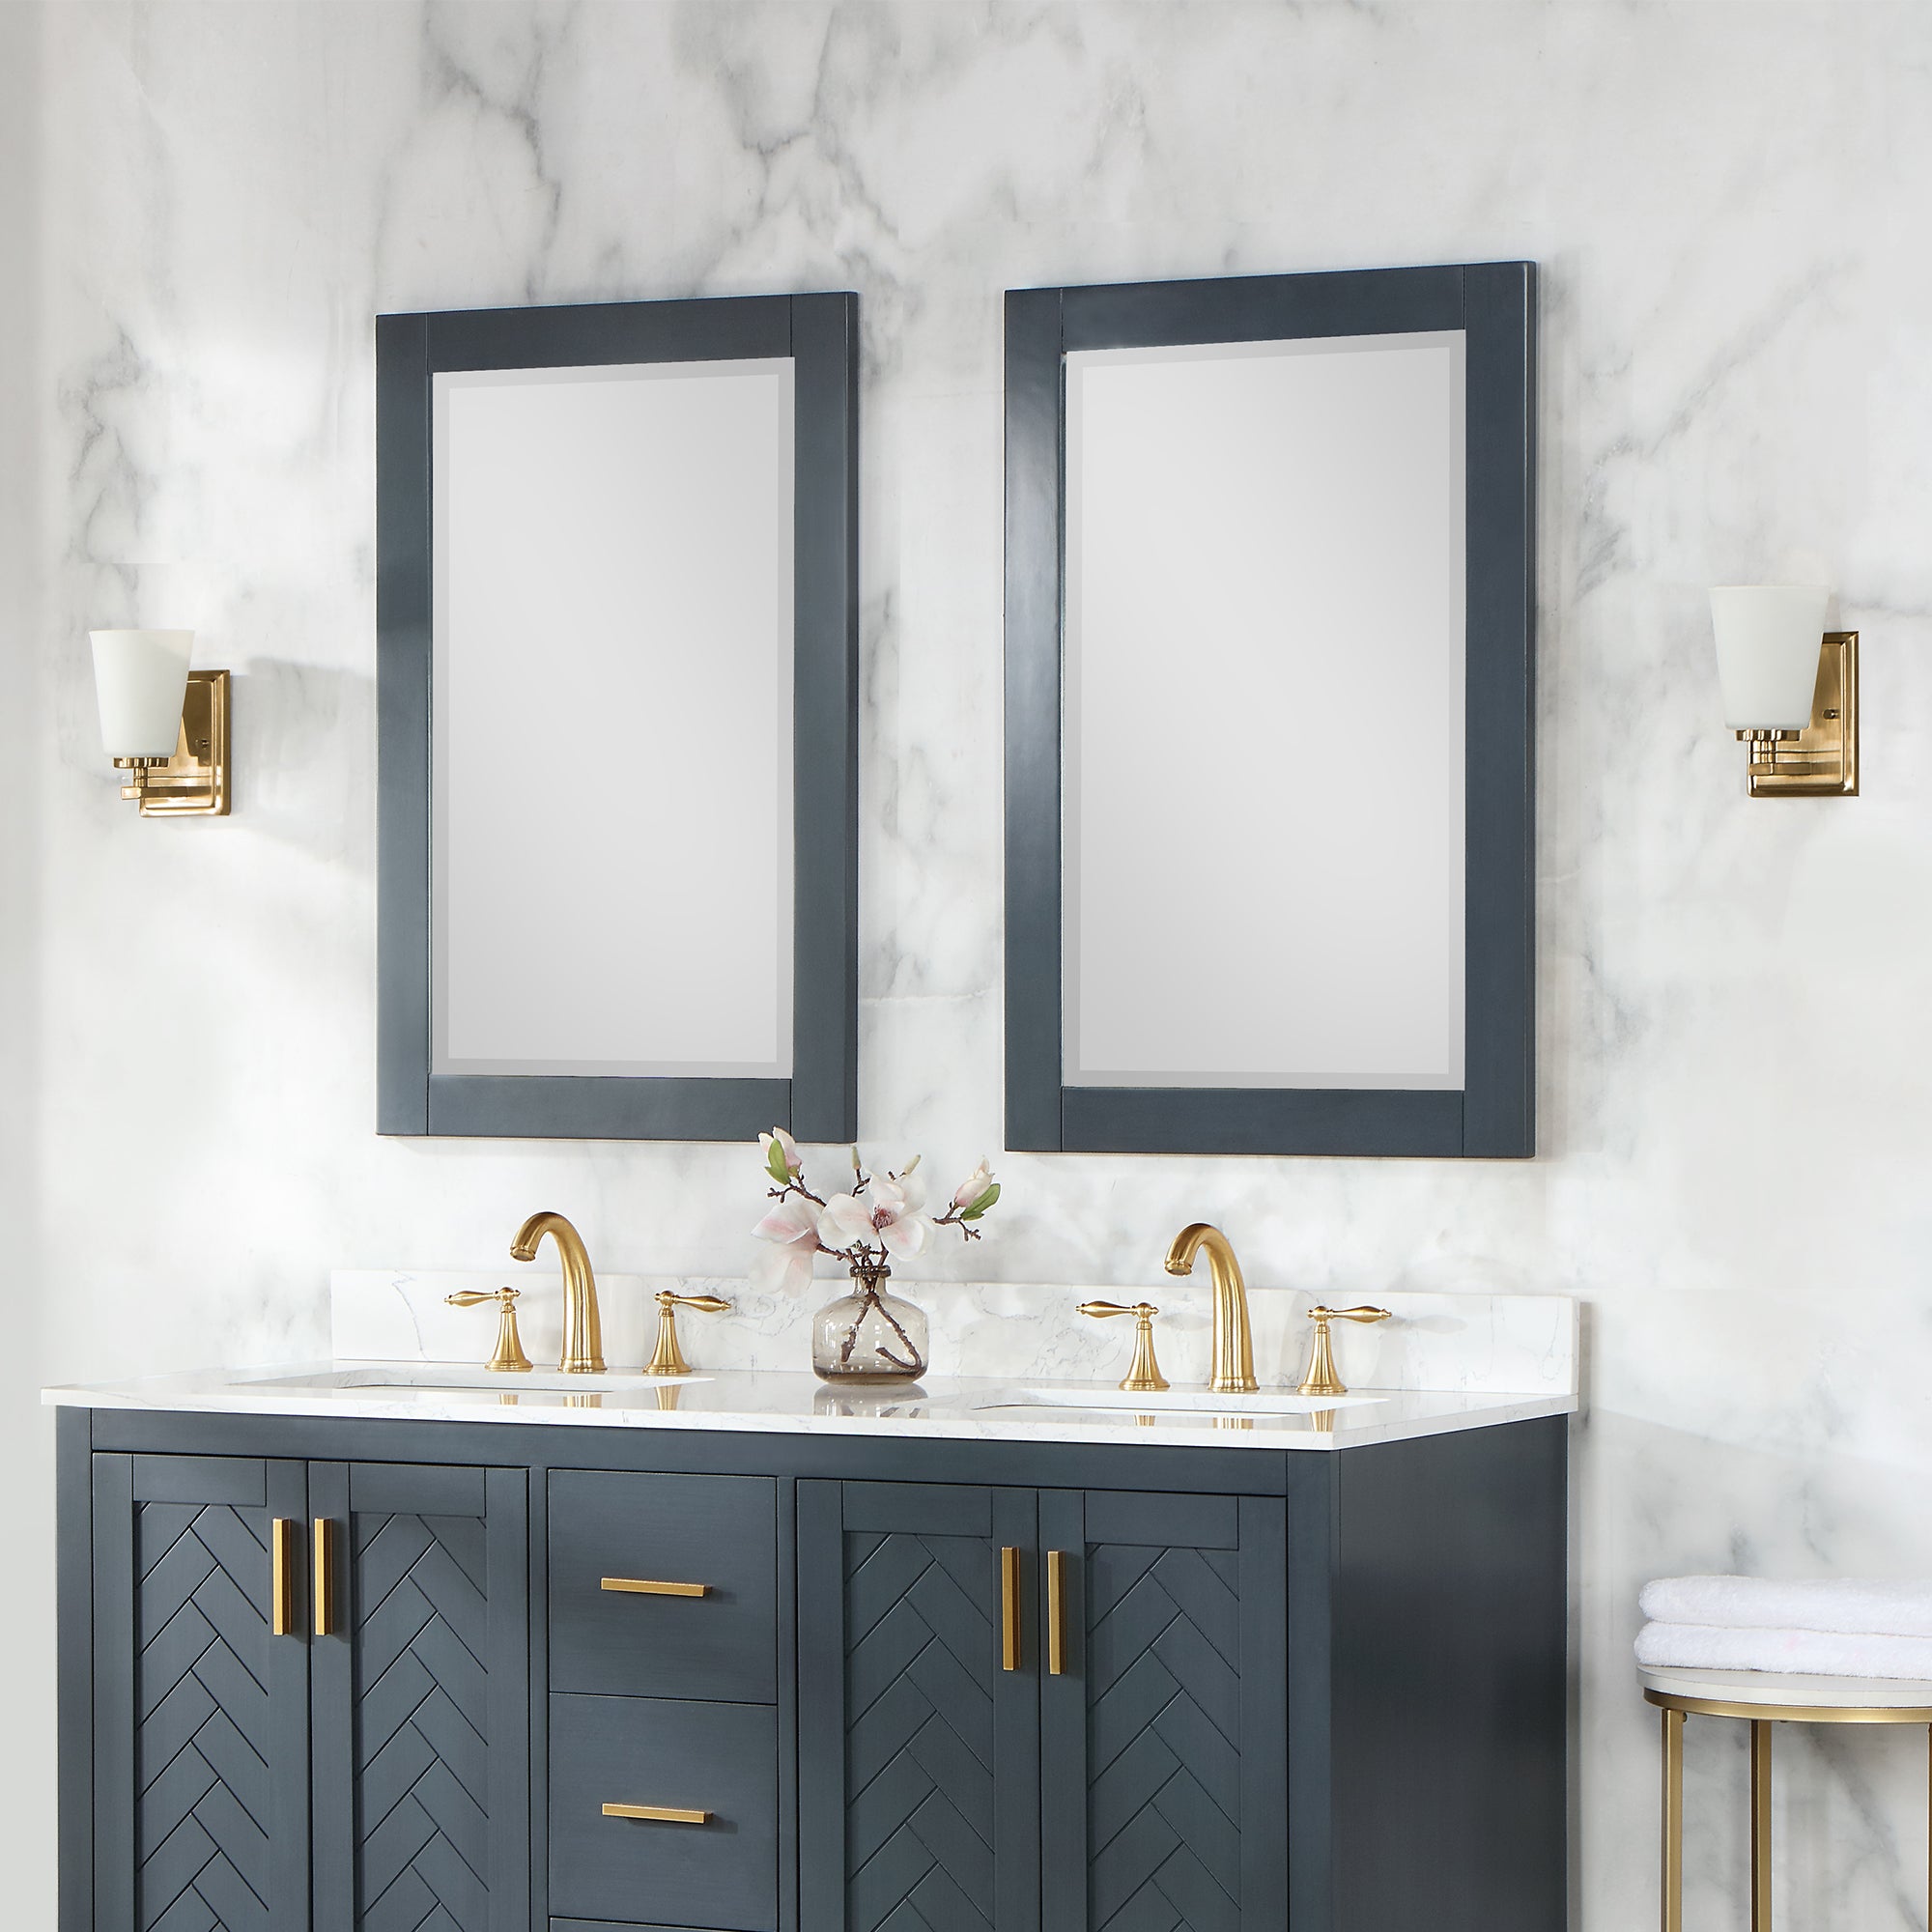 Maribella 24" Rectangular Bathroom Wood Framed Wall Mirror